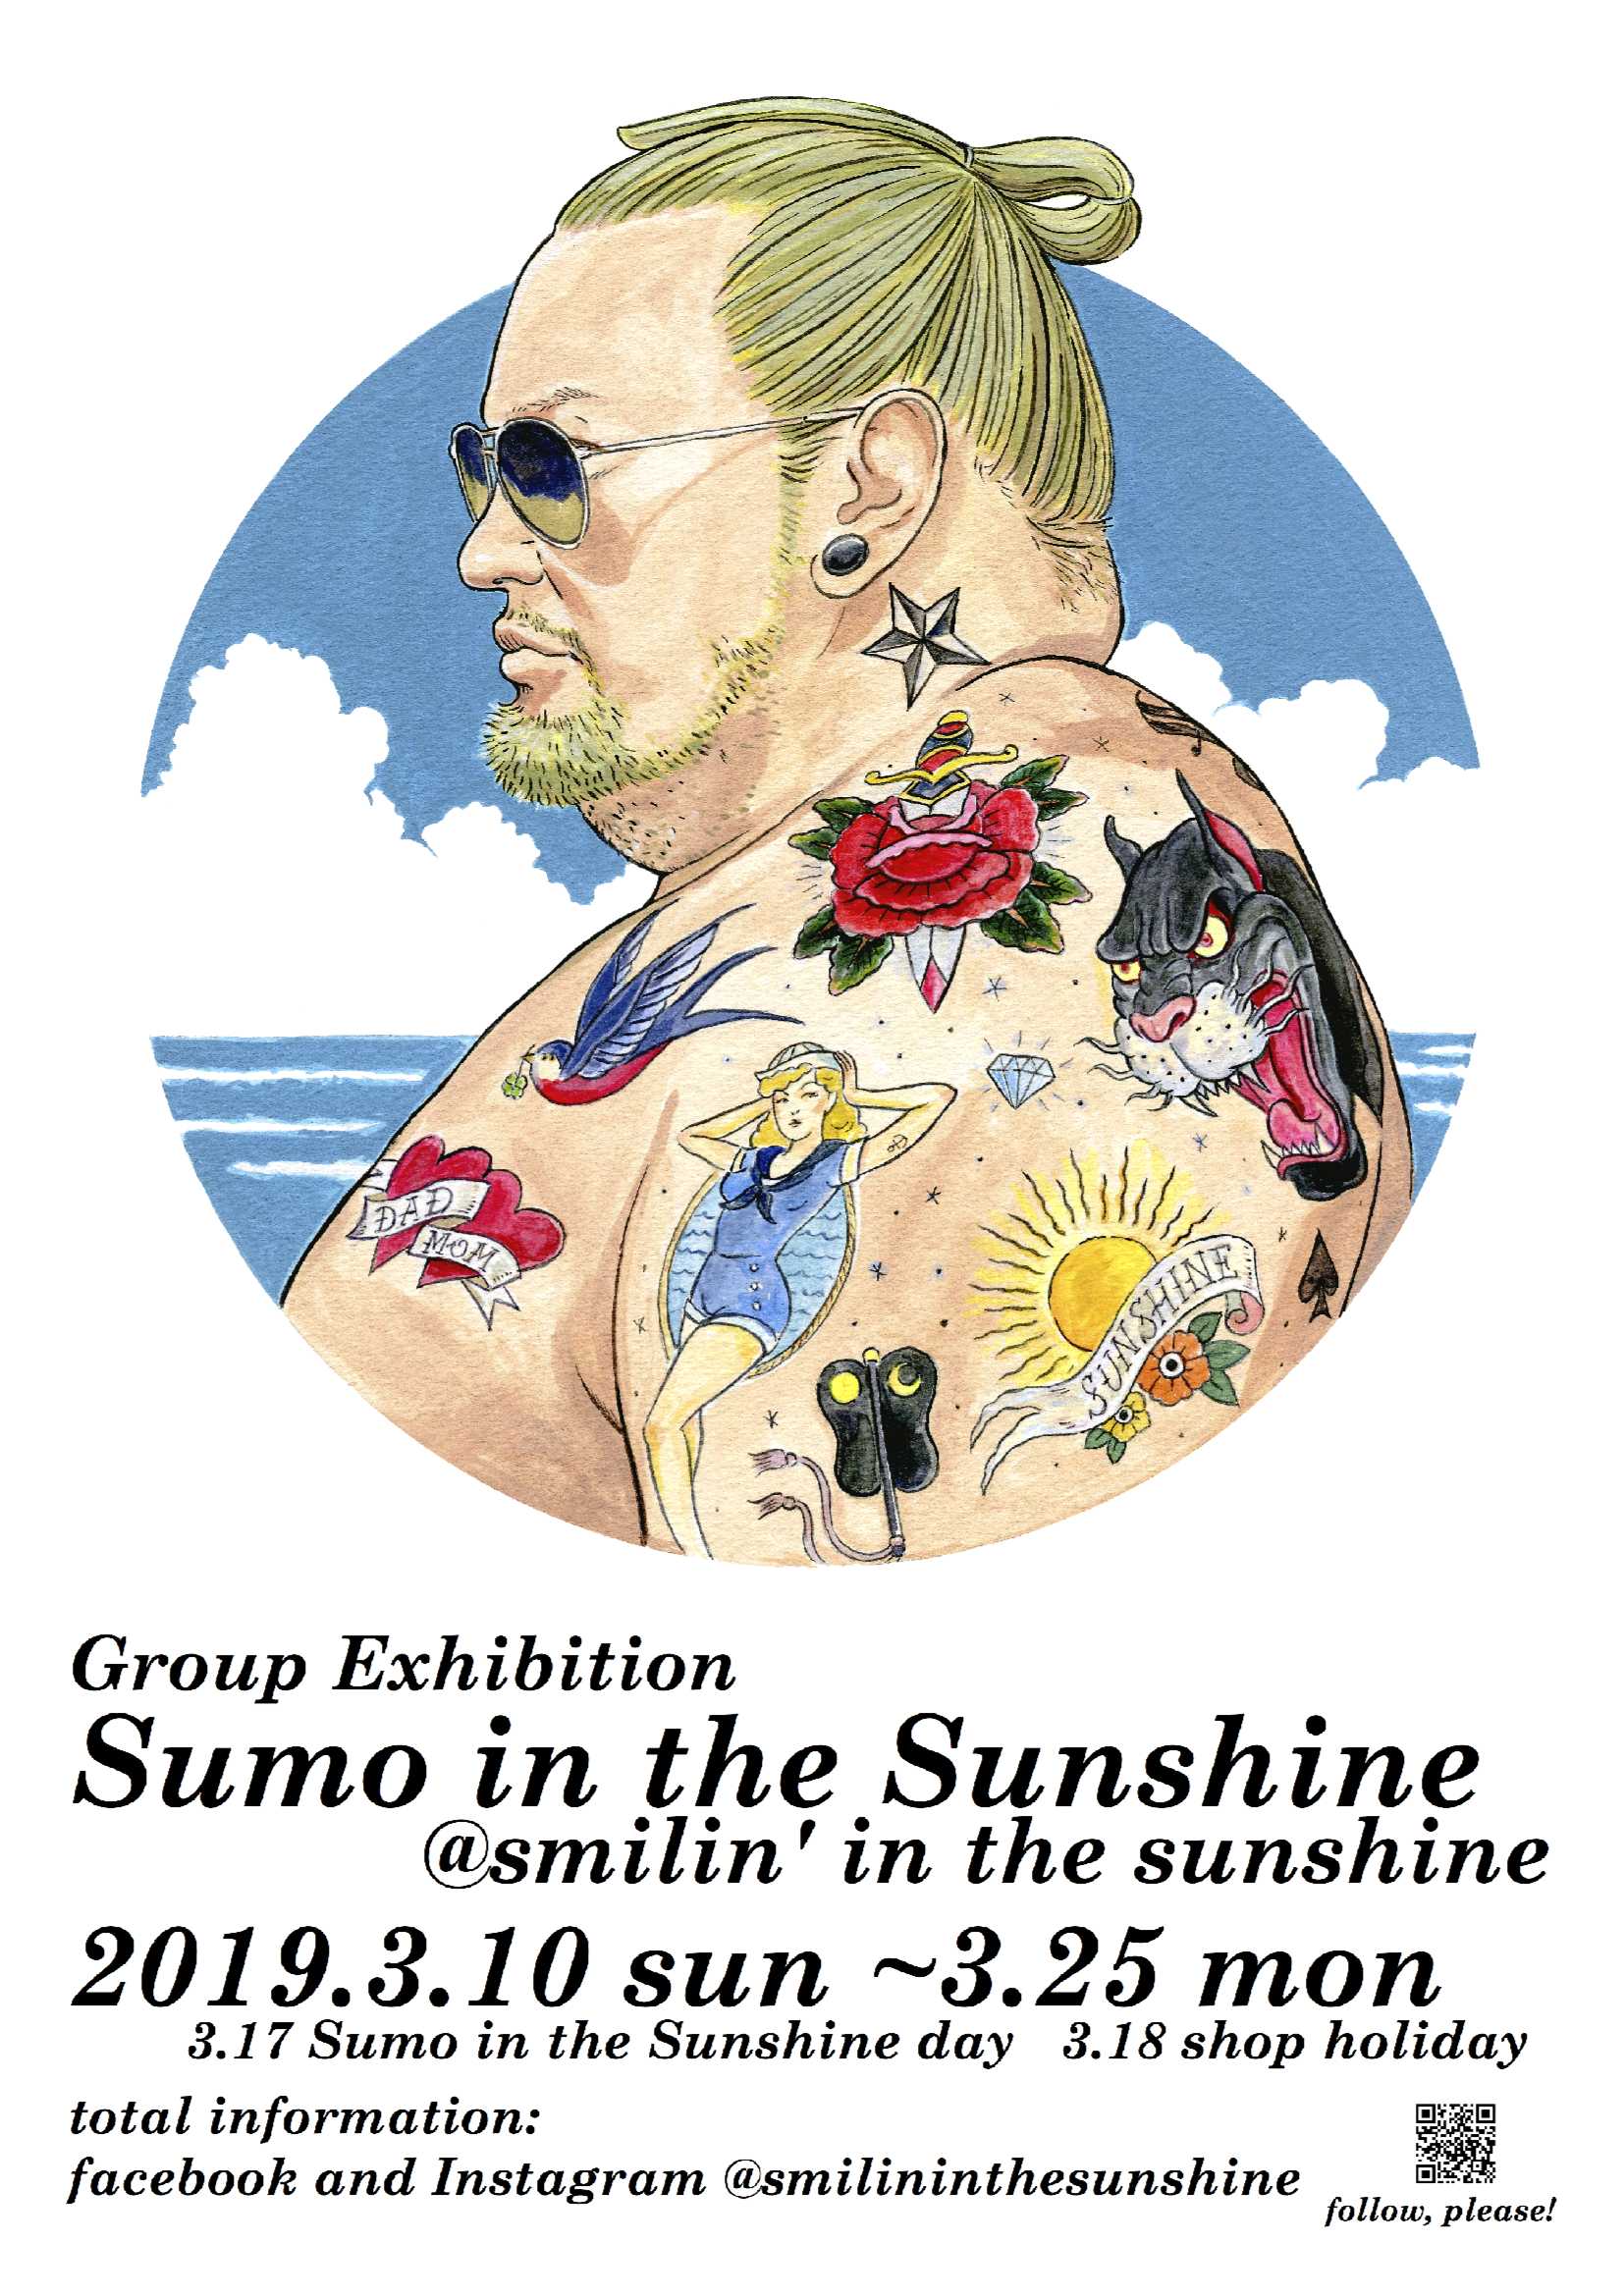 大阪でおすもう展 Sumo In The Sunshine 会期延長 おすもうさん